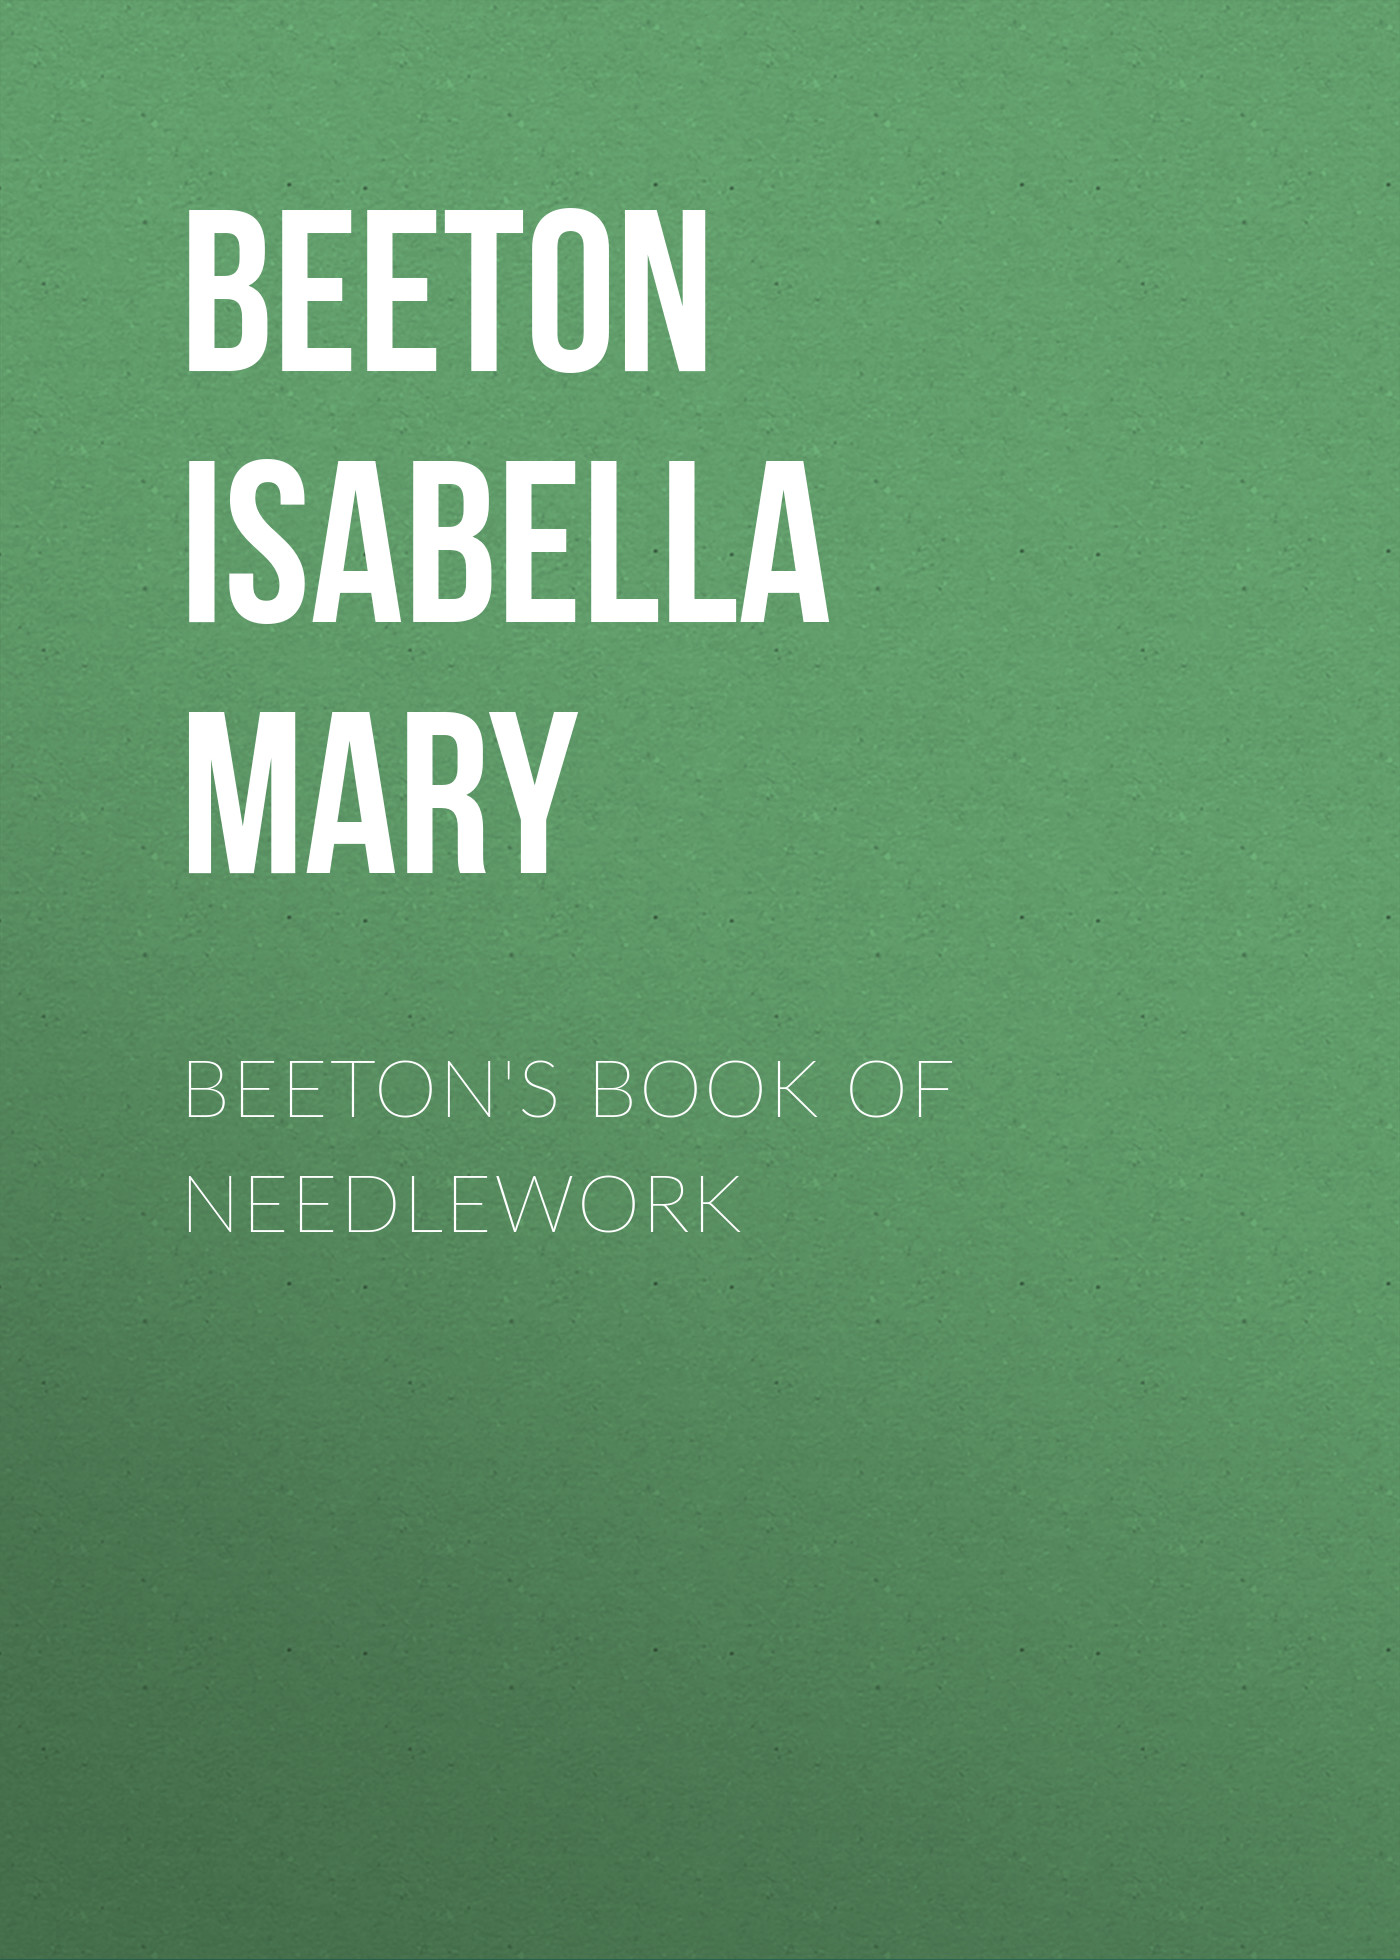 Книга Beeton's Book of Needlework из серии , созданная Isabella Beeton, может относится к жанру Зарубежная старинная литература, Зарубежная прикладная и научно-популярная литература, Хобби, Ремесла. Стоимость электронной книги Beeton's Book of Needlework с идентификатором 34842982 составляет 0 руб.